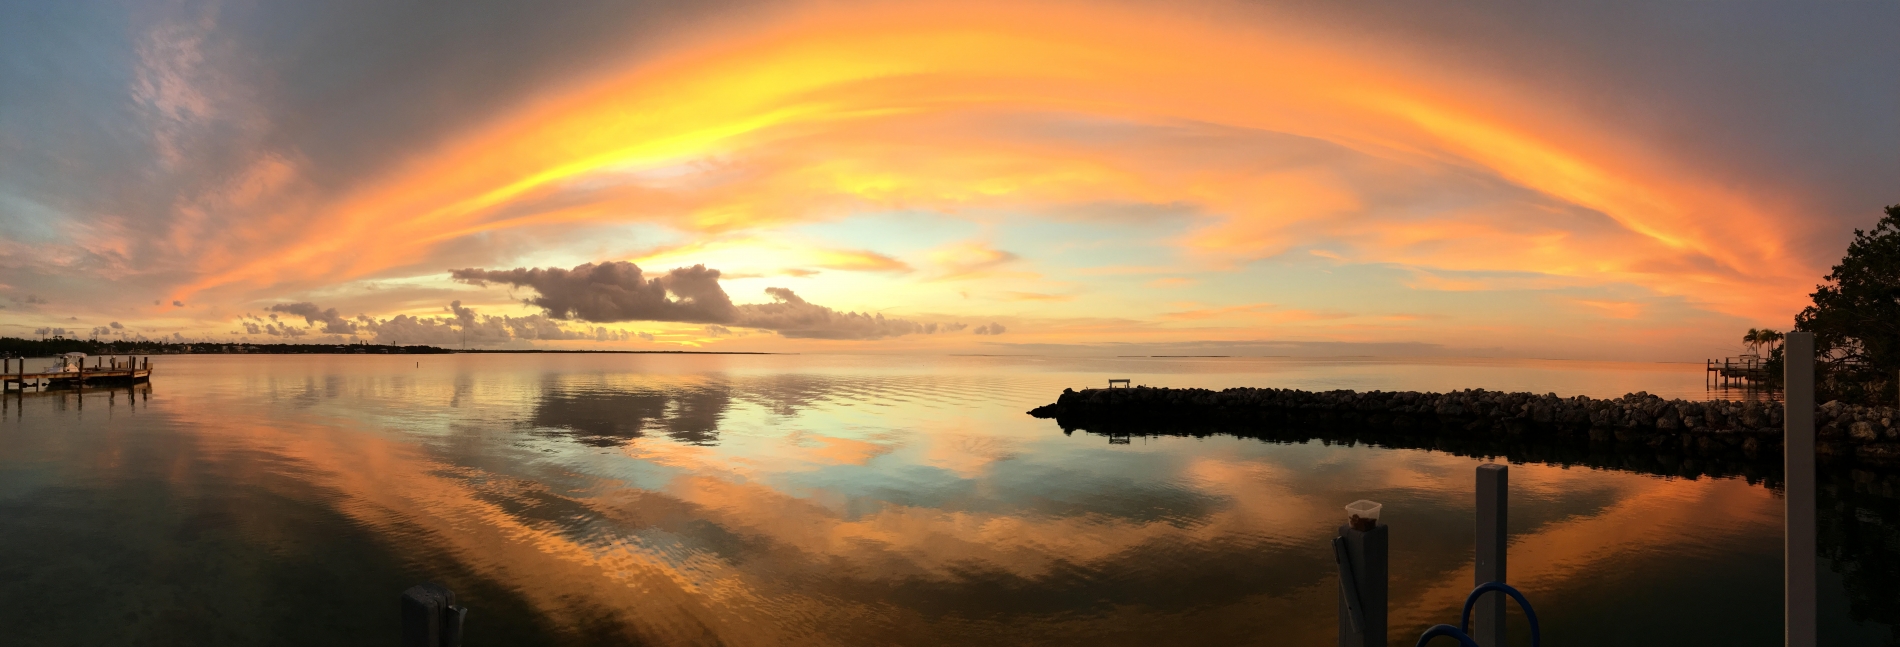 Cloudbow Sunset, Key Largo